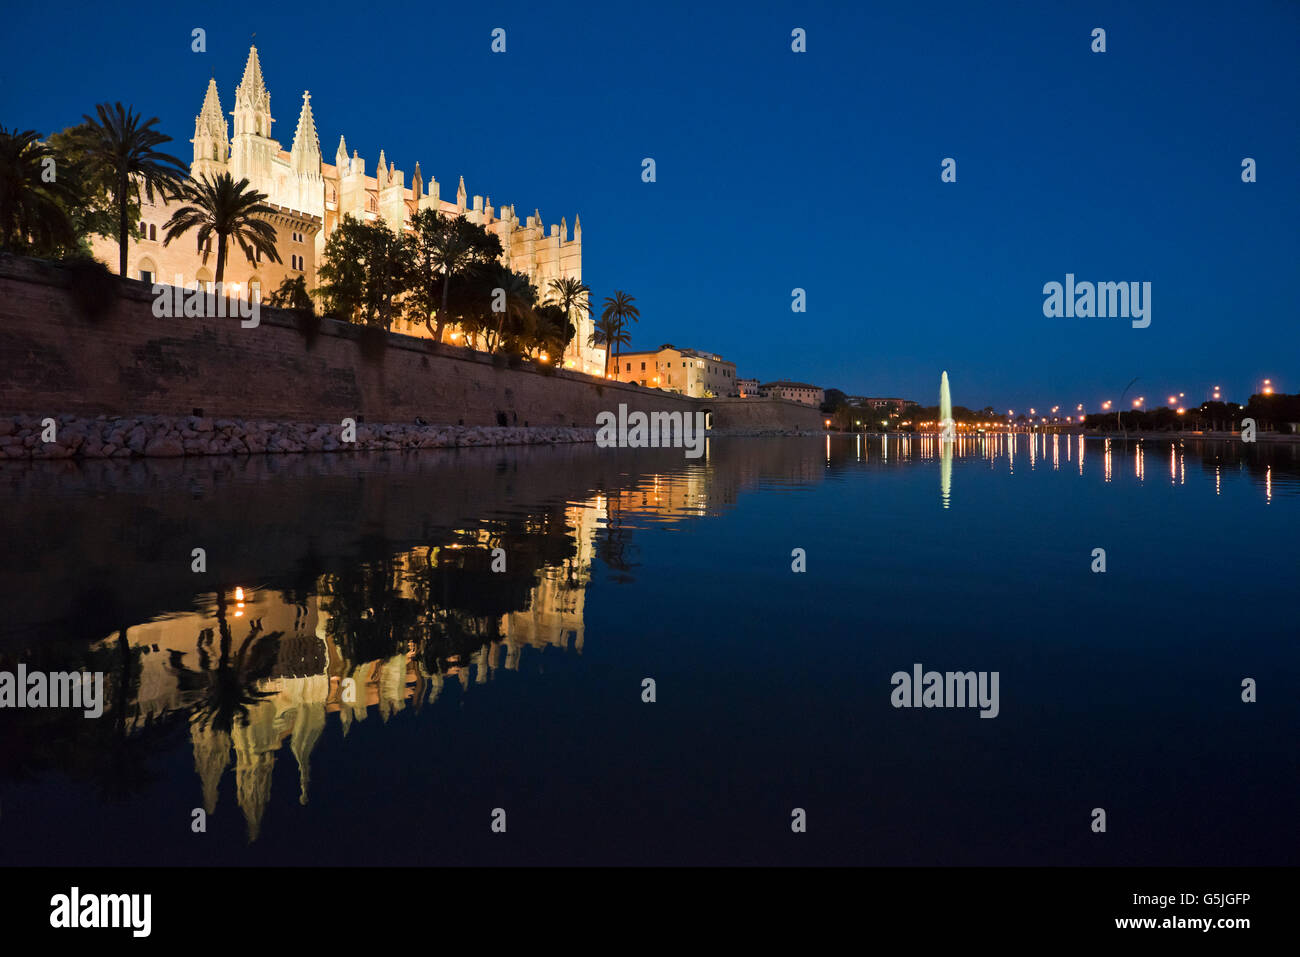 Horizontale (2 Bild Heftung) Nacht Zeit Panoramablick von der Kathedrale von Santa Maria von Palma, auch bekannt als La Seu auf Mallorca. Stockfoto